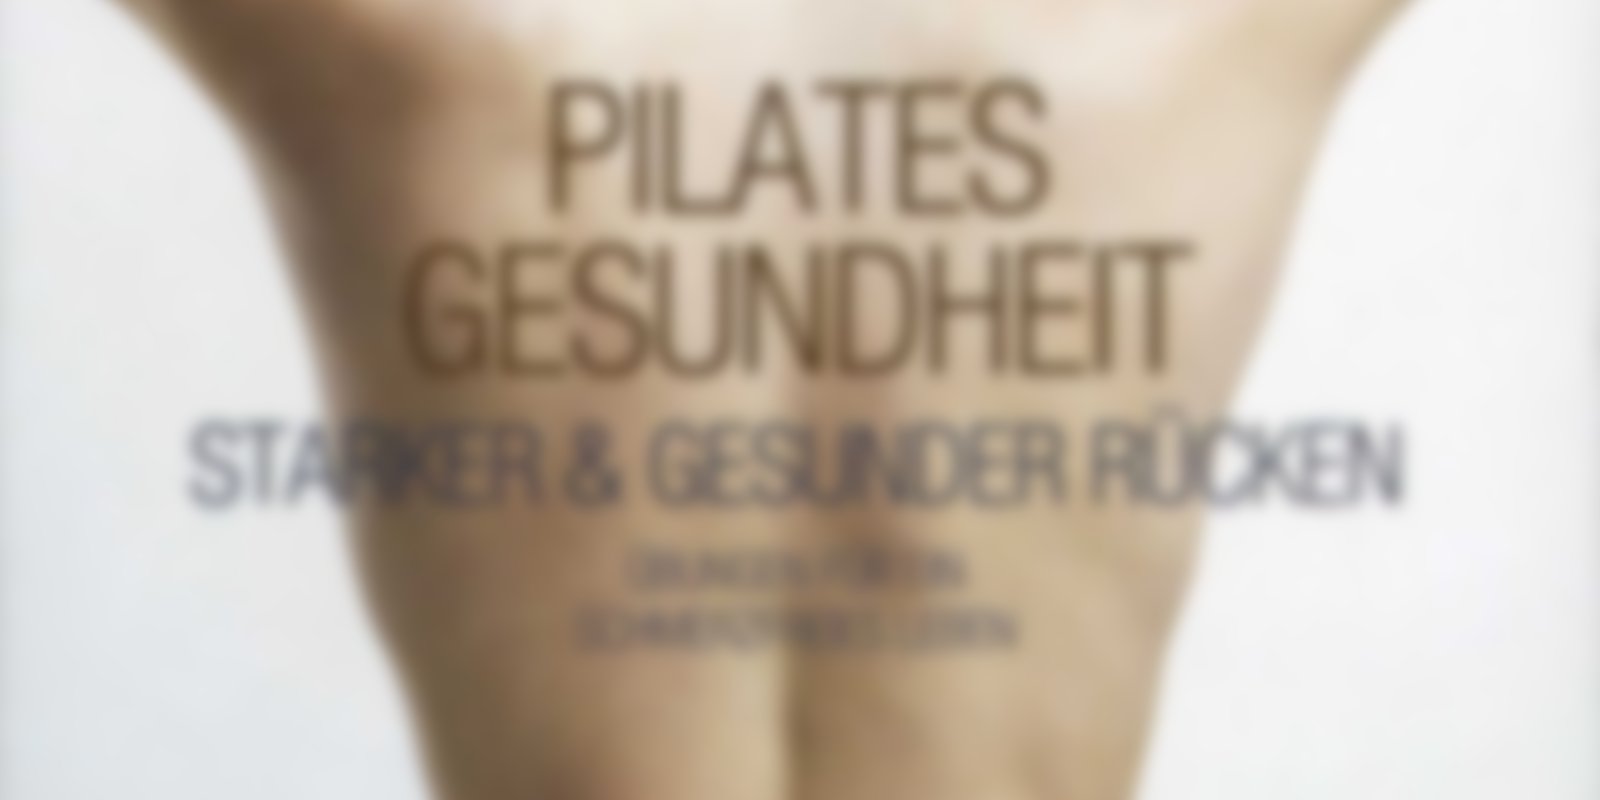 Pilates Gesundheit - Starker & gesunder Rücken